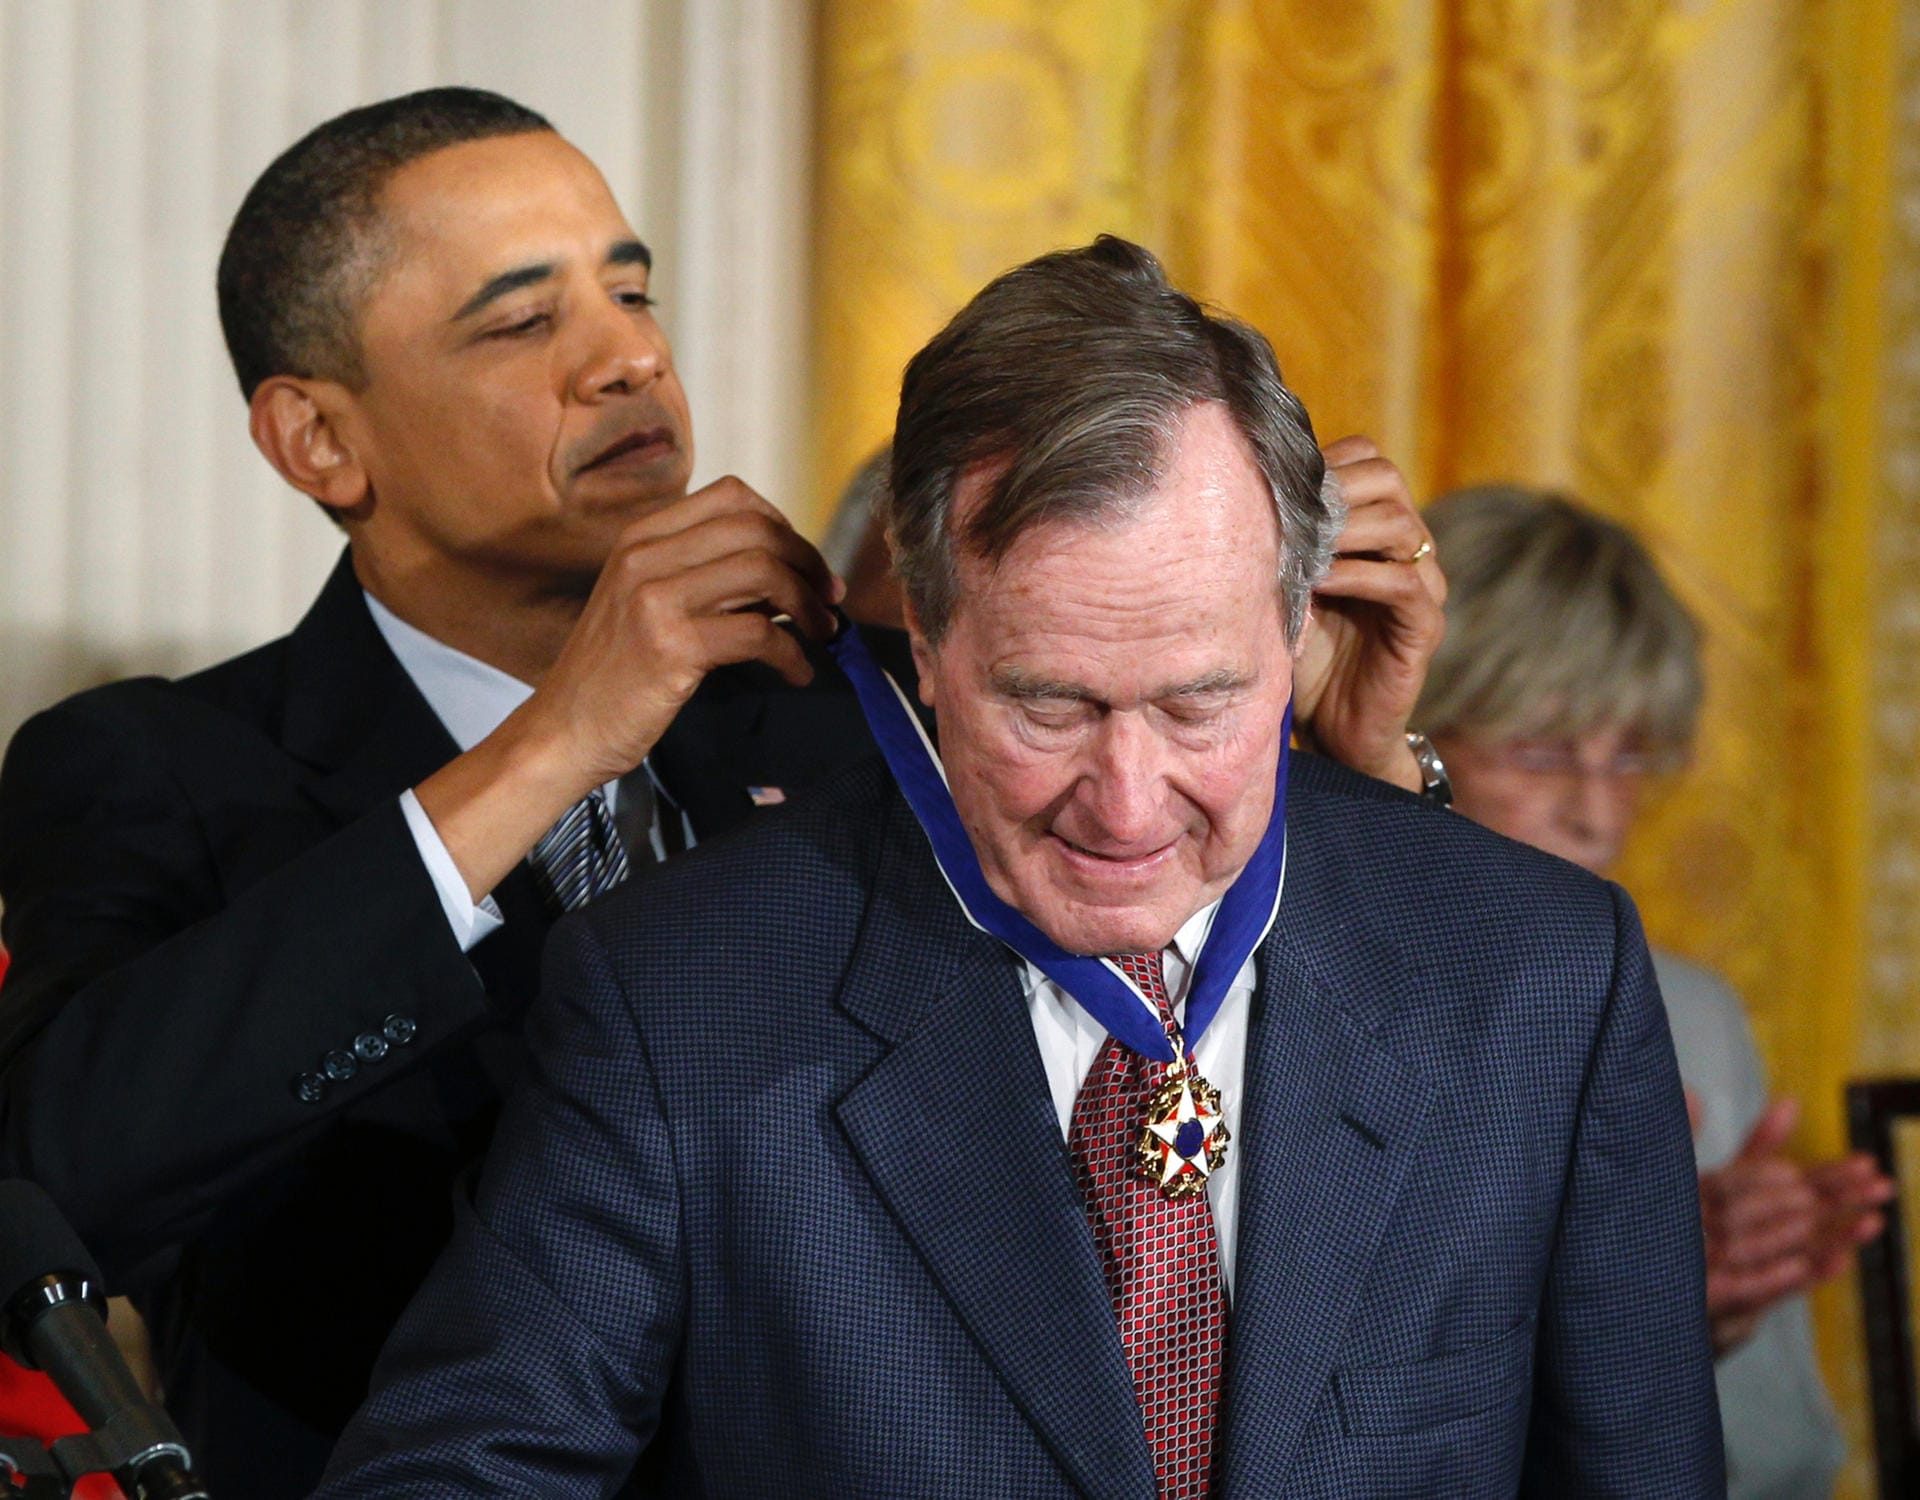 Späte Ehre: Barack Obama verleiht Bush im Februar 2011 im Weißen Haus die Freiheitsmedaille – die höchste zivile Auszeichnung in den USA. Obama lobt dabei insbesondere Bushs diplomatisches Geschick bei der Beendigung des Kalten Kriegs.